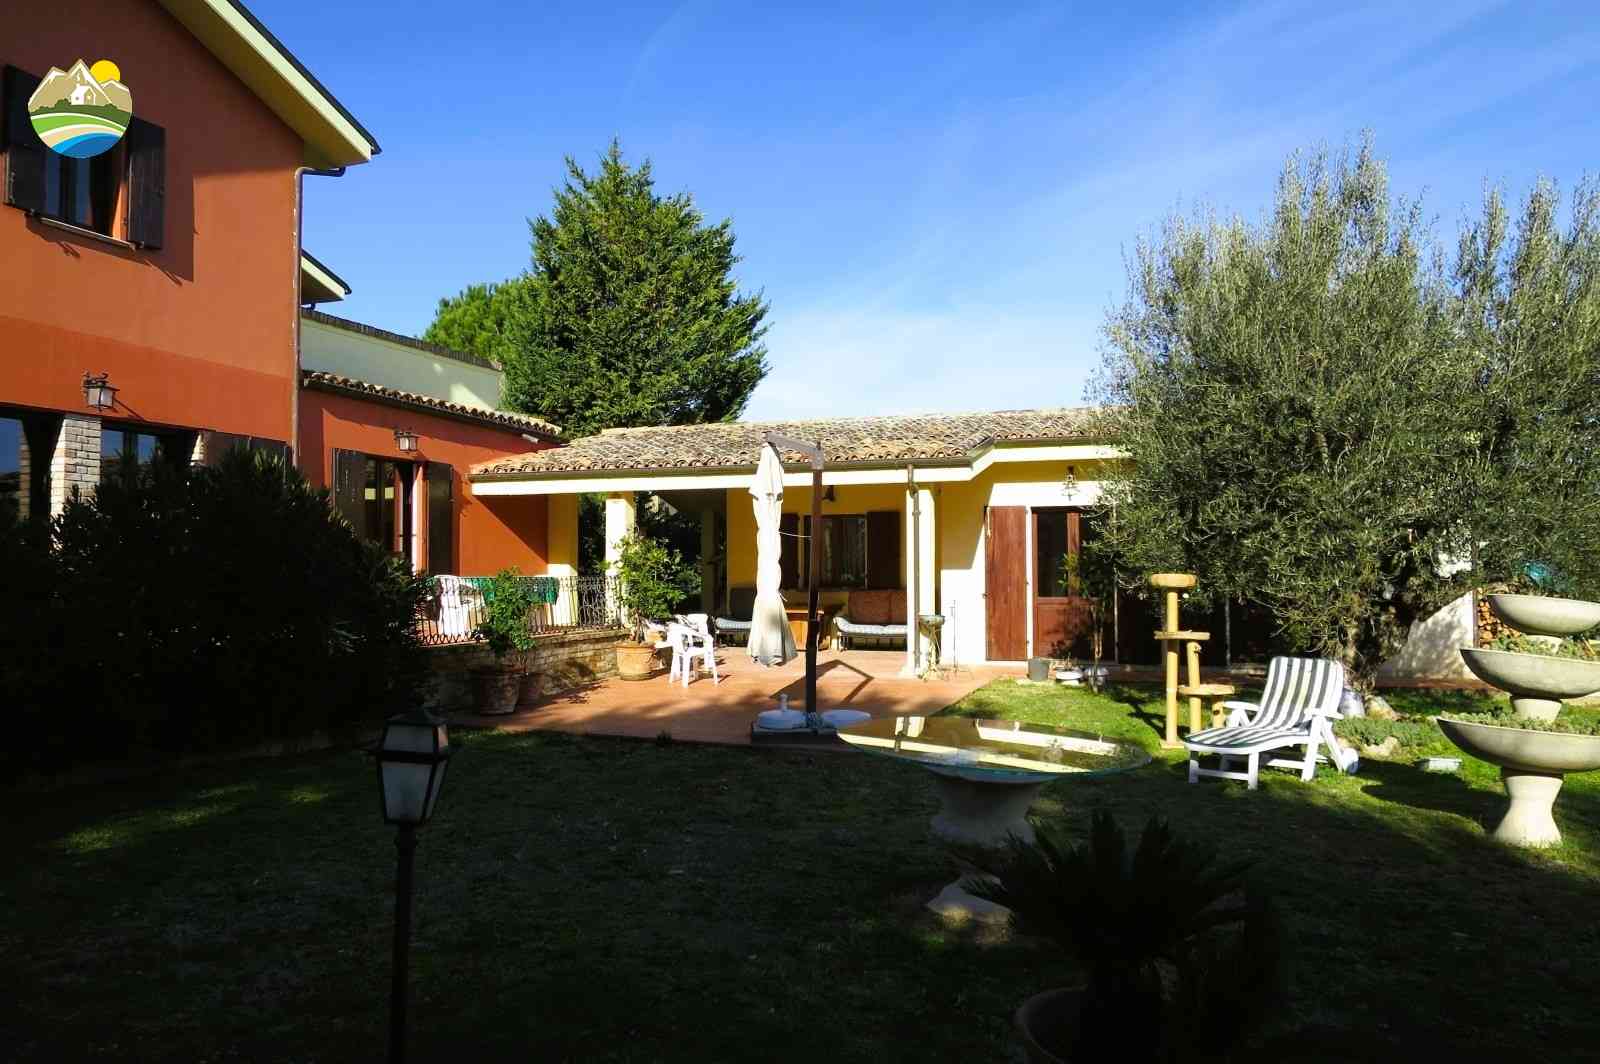 Country Houses Country Houses for sale Bellante (TE), Casale La Vignola - Bellante - EUR 524.401 850